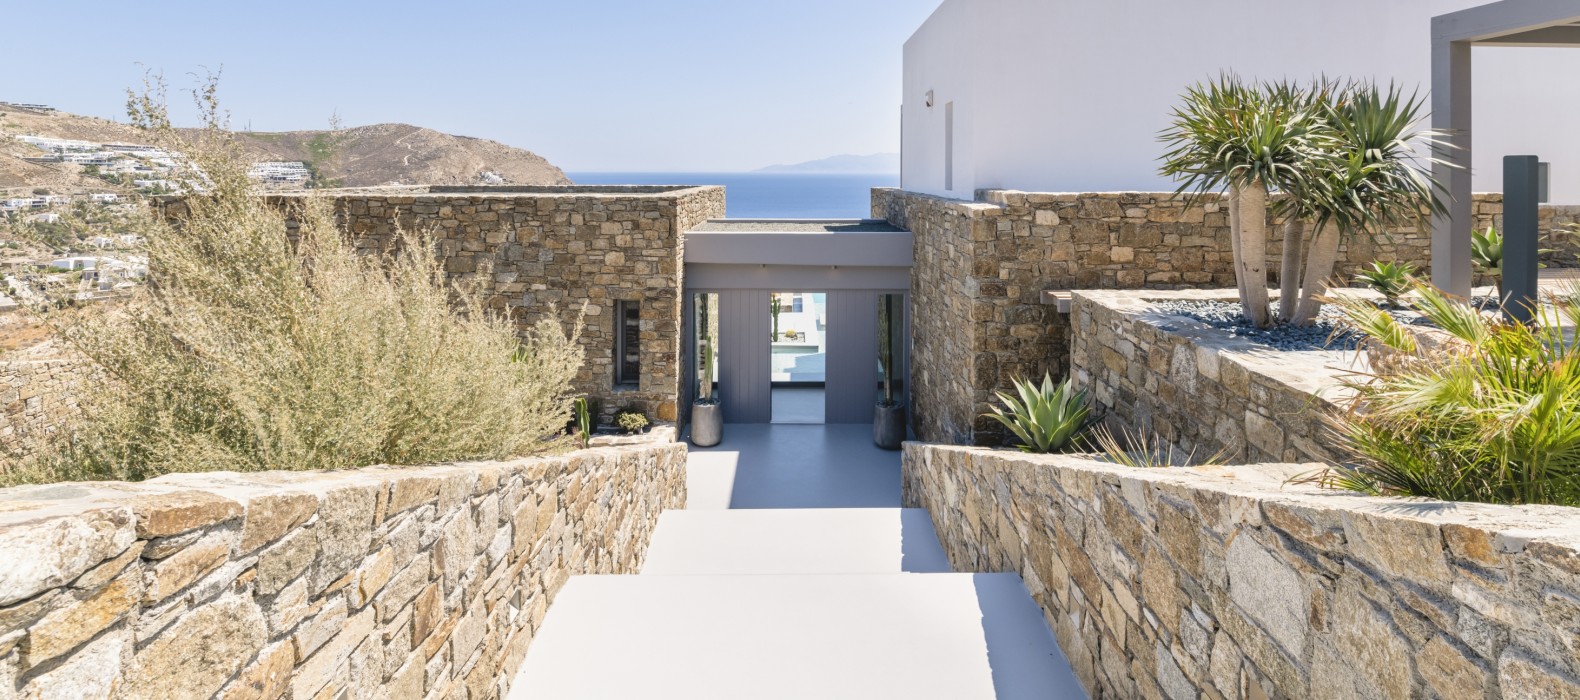 Exterior entrance view of Villa Infinita in Mykonos